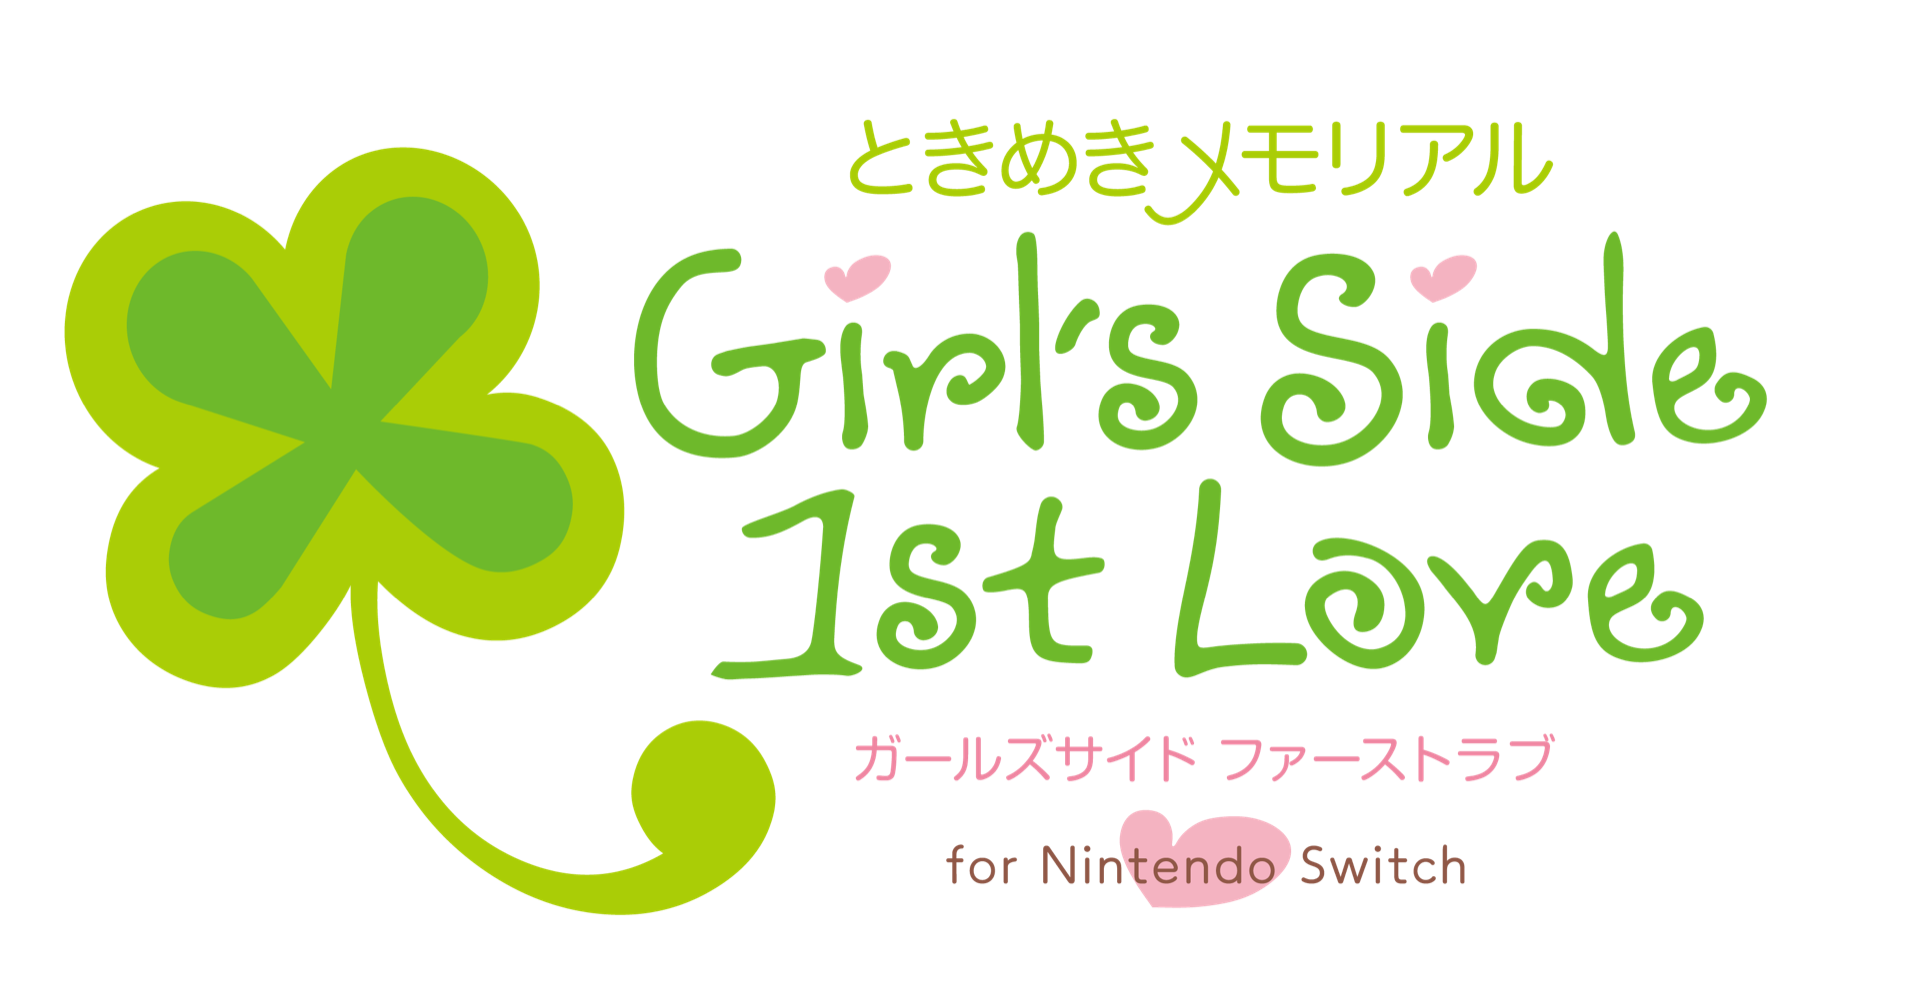 《纯爱手札 Girl's Side》1、2、3 代将登 Switch 平台 画面及语音品质升级